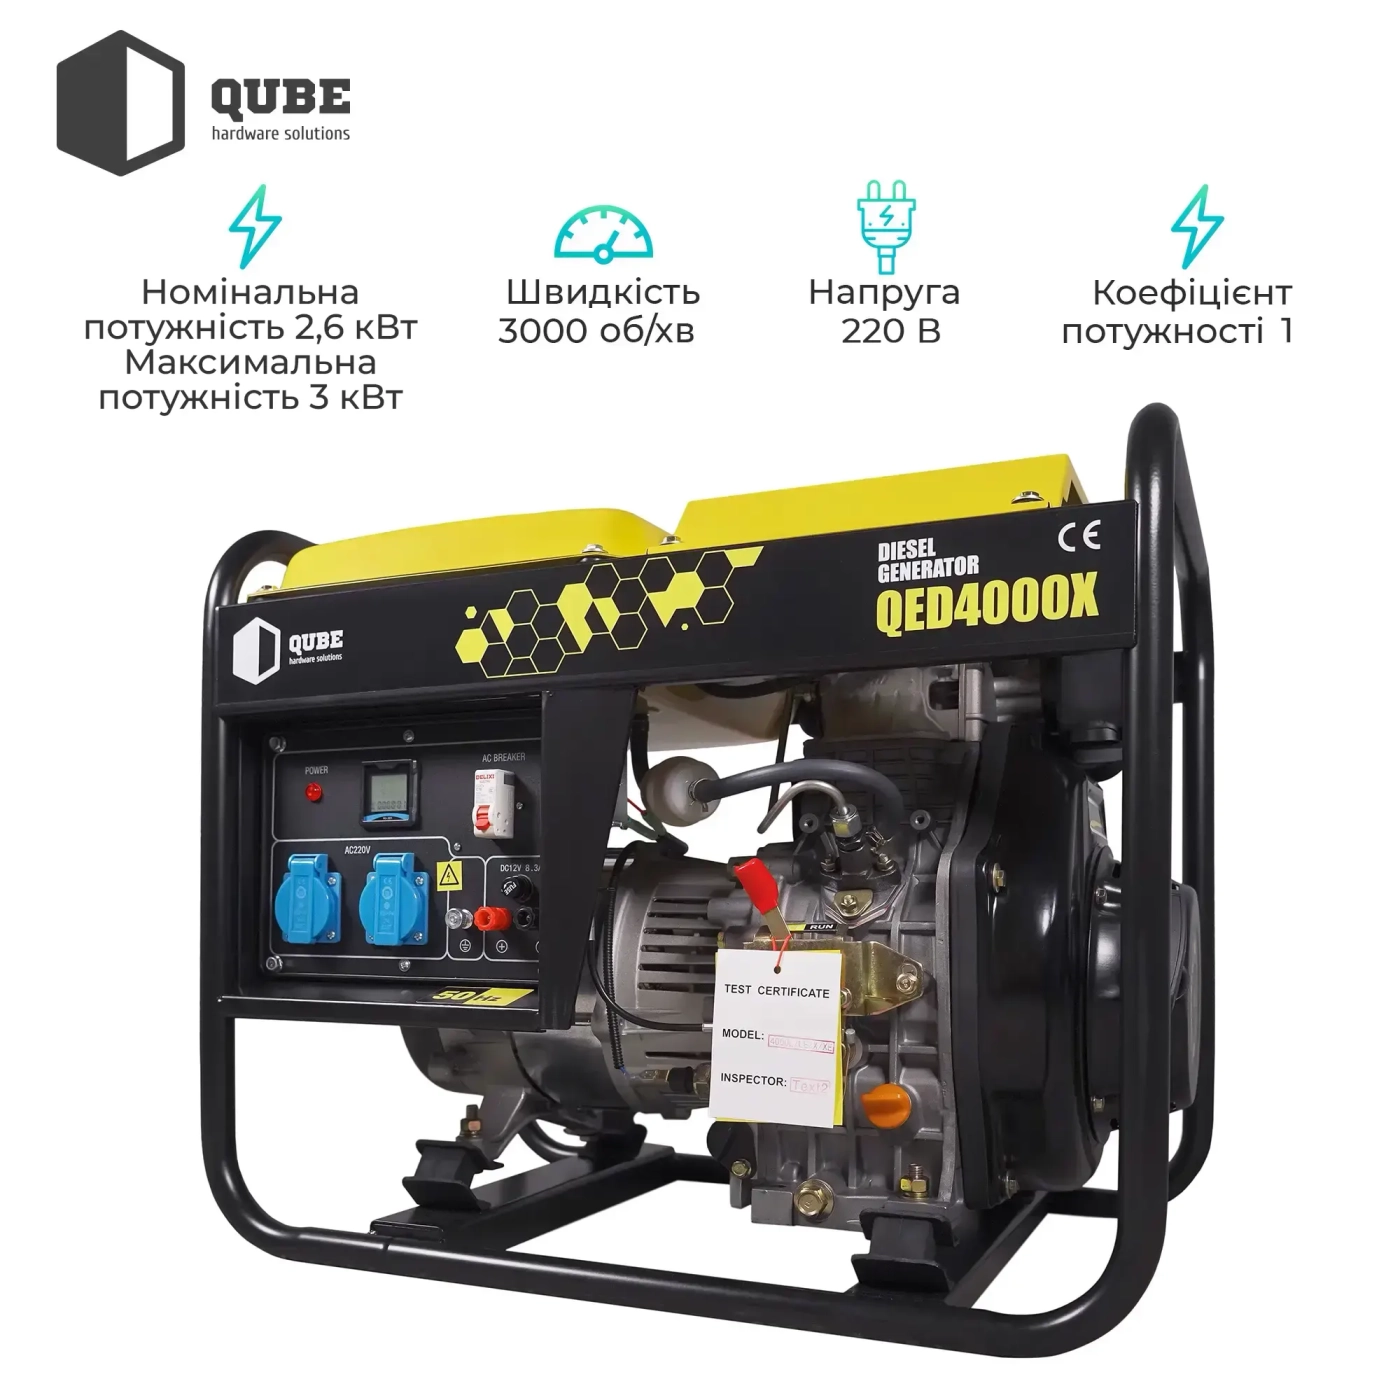 Купить Генератор дизельный Qube QED4000X 1-phase, 2.6/kW 3.0kW, 220V,12L, Руч старт - фото 5